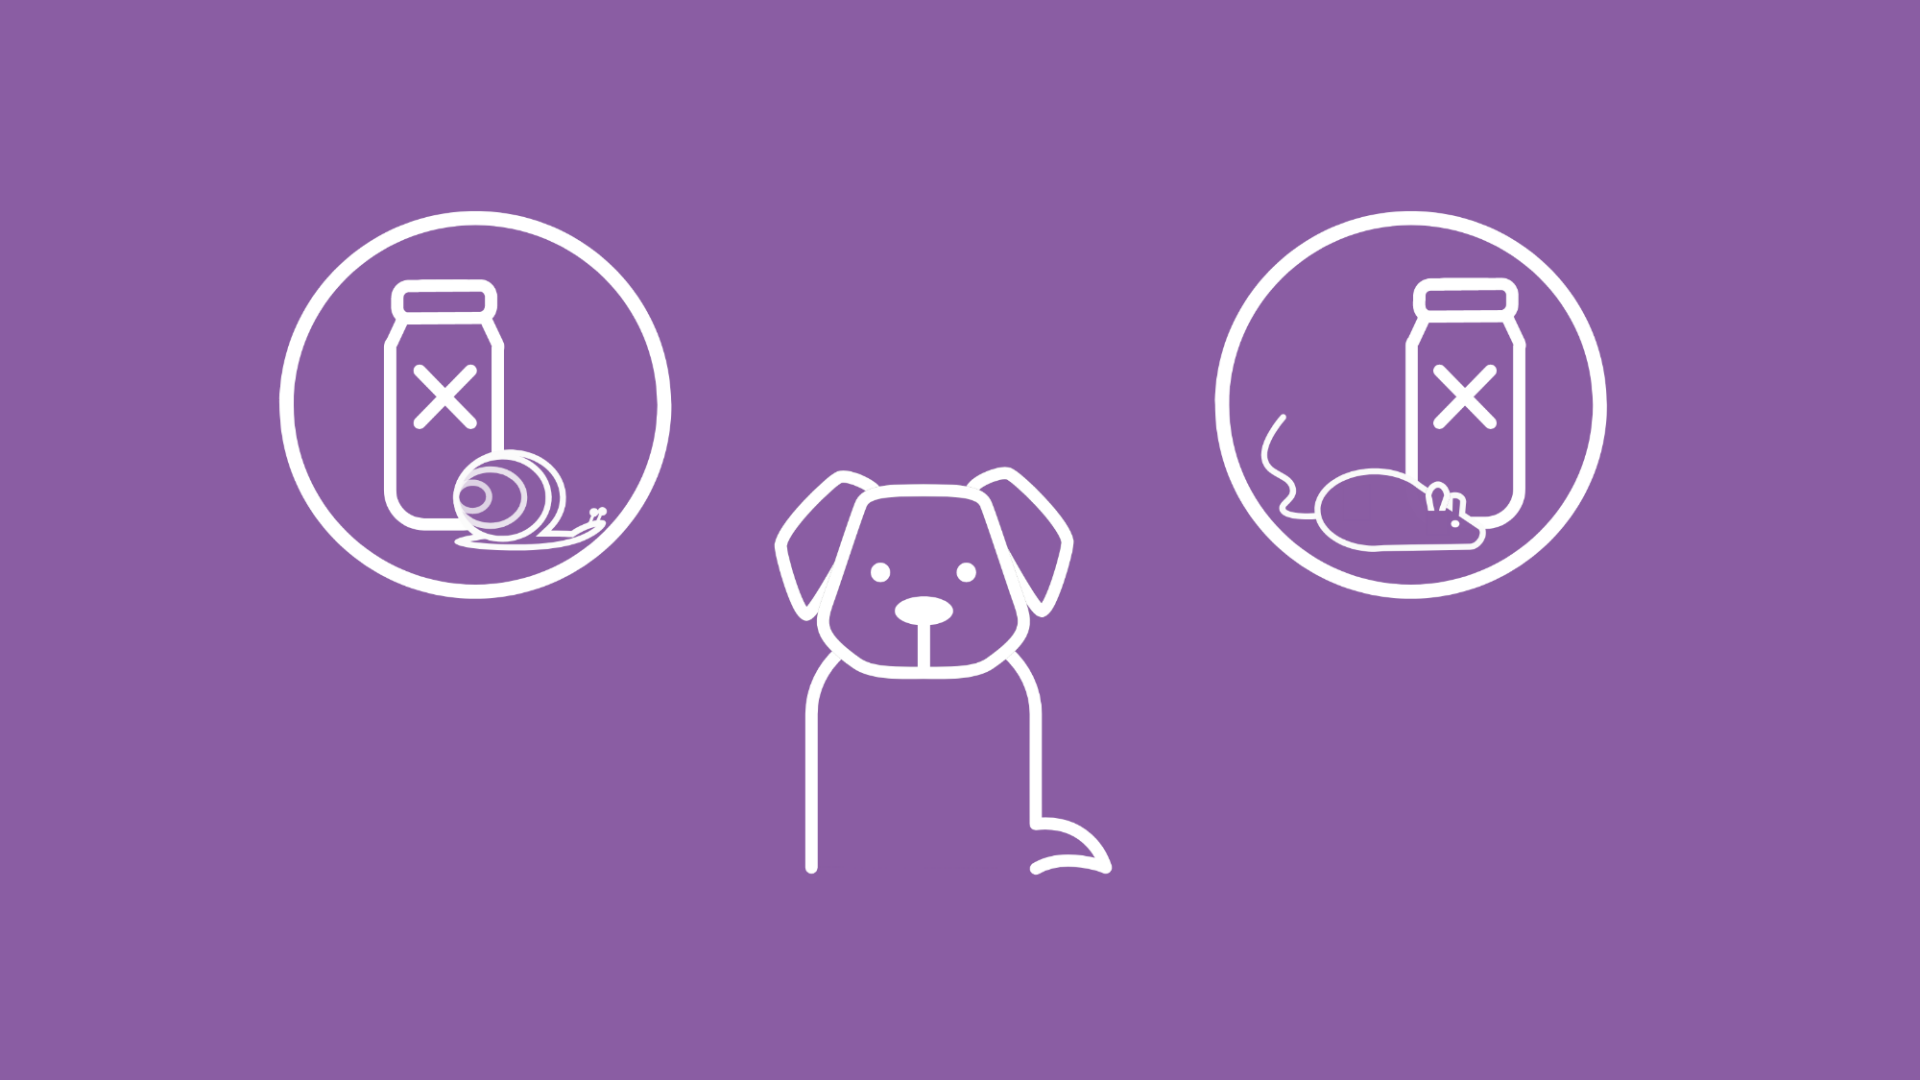 Das Bild stellt anhand eines sitzenden Hundes, Schneckengift-Icon und Rattengift-Icon die Vergiftung beim Hund dar.